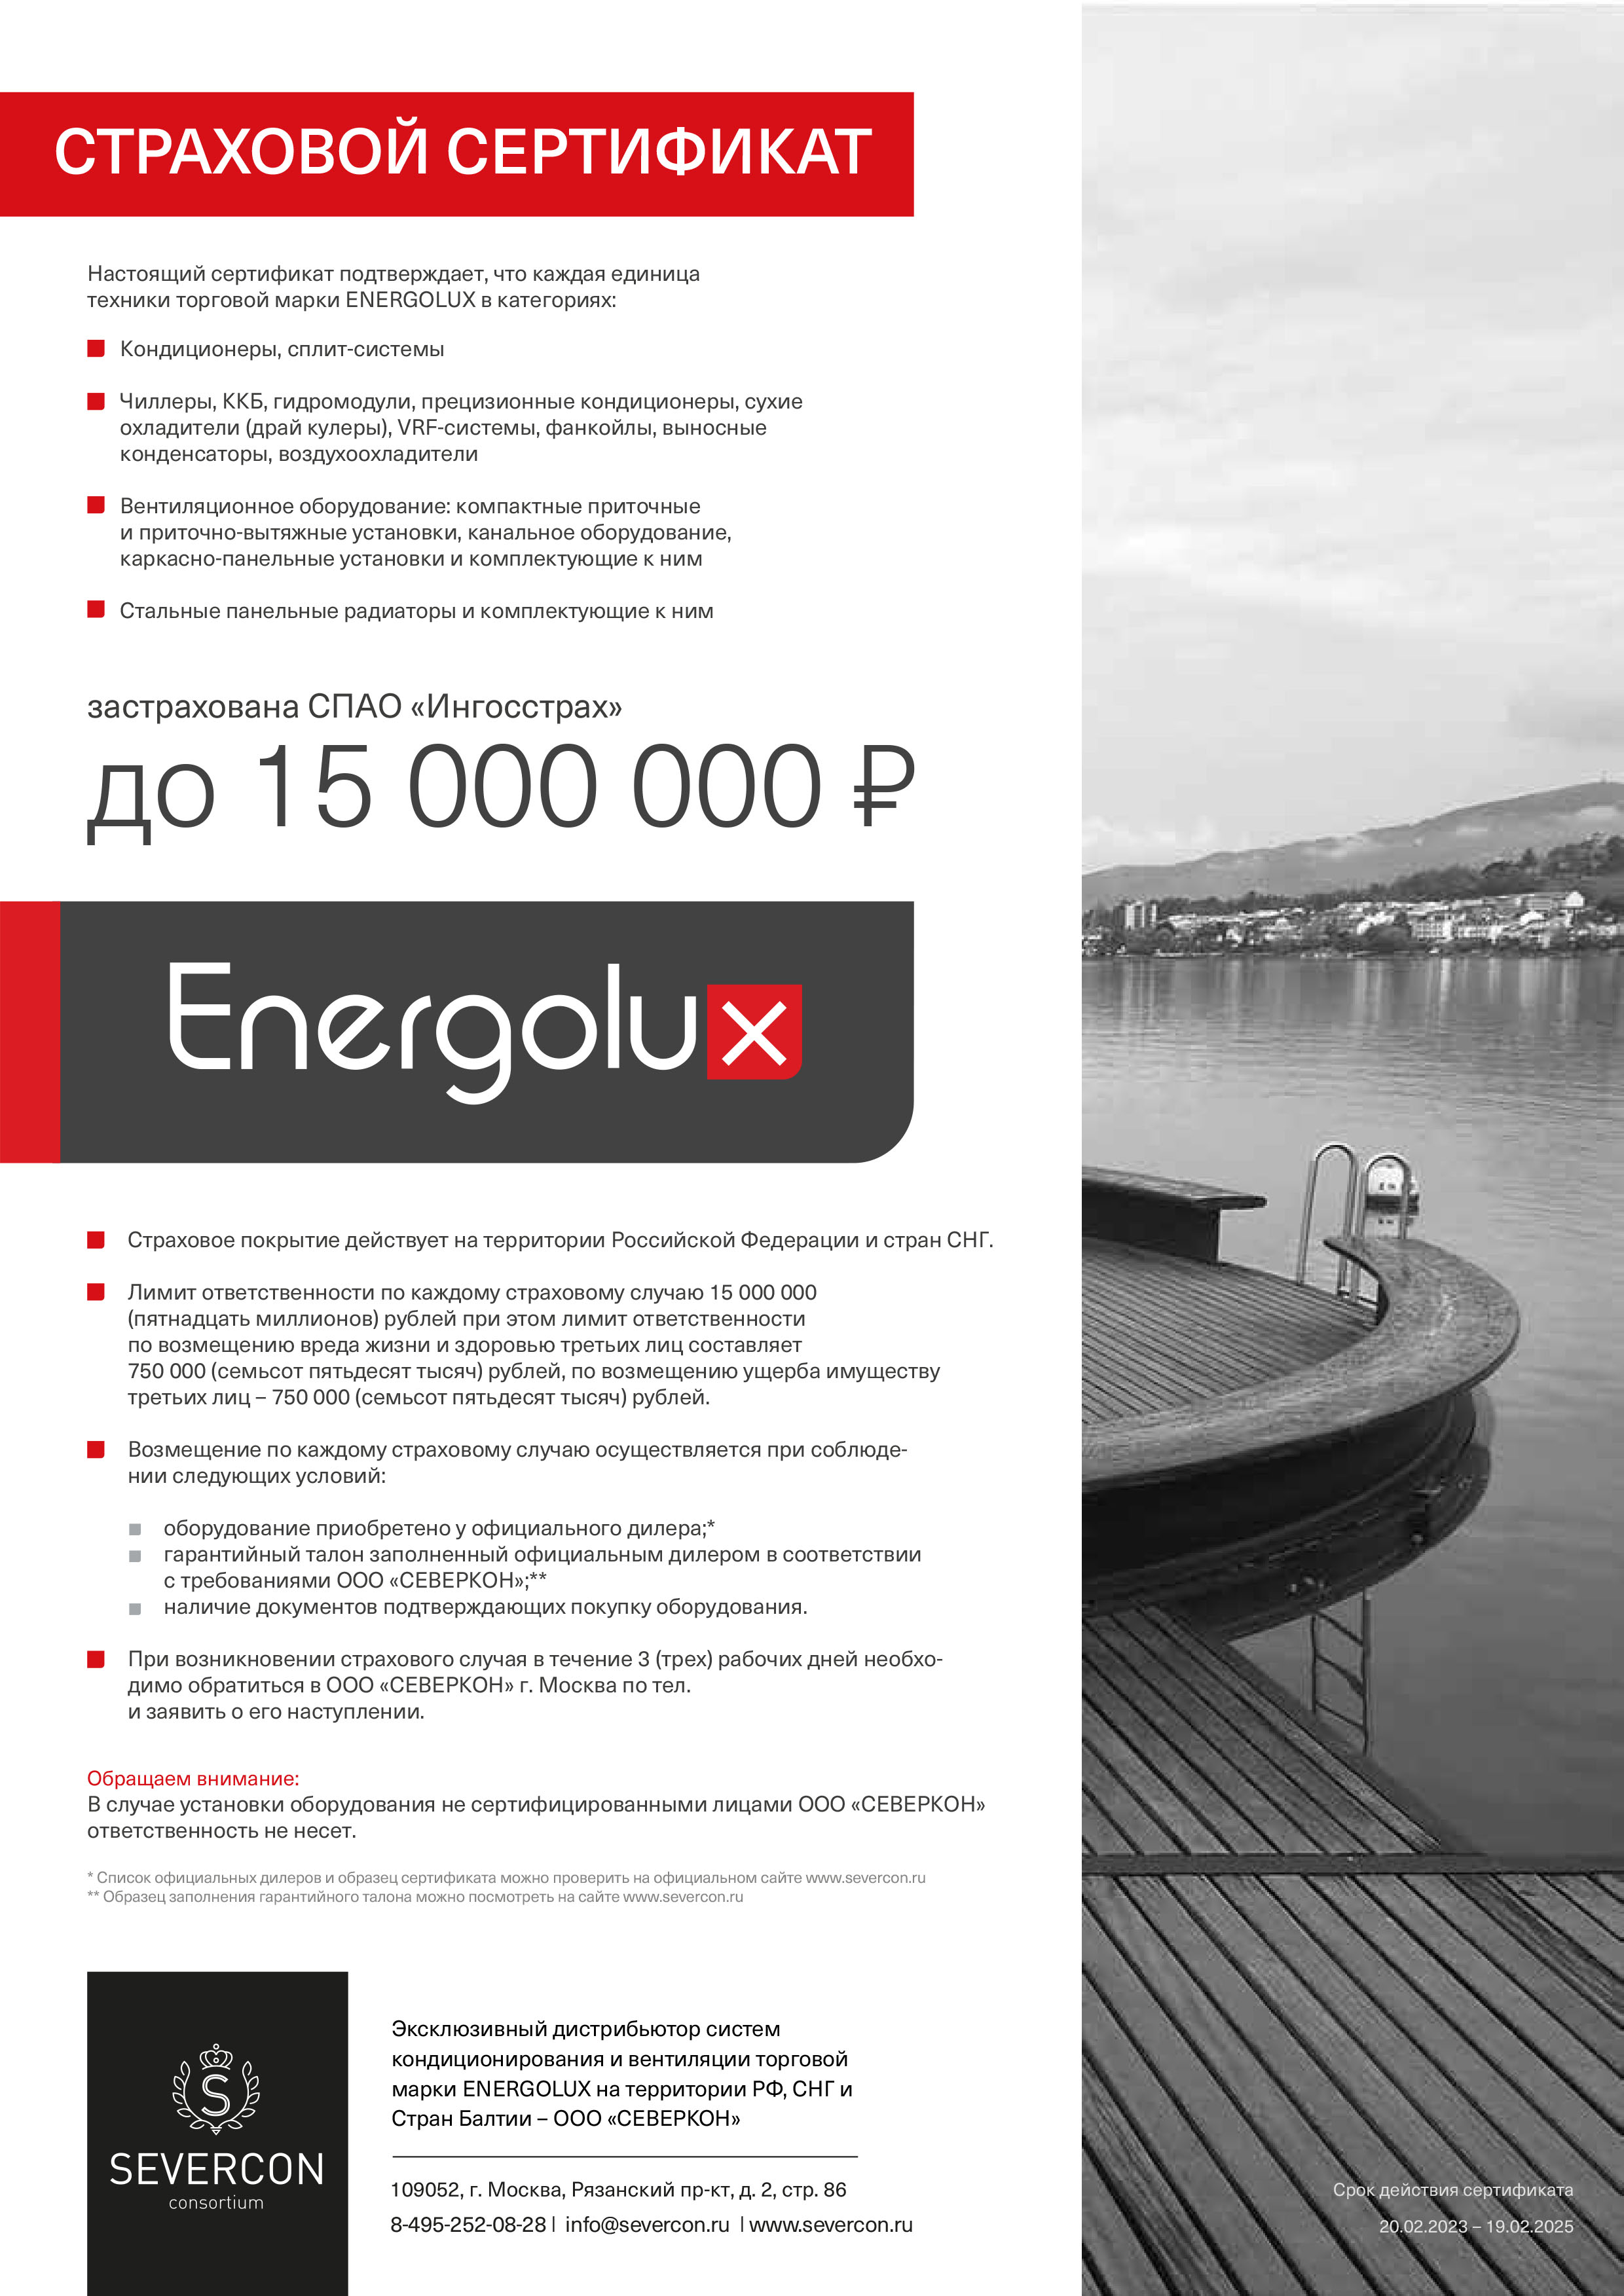 Страховой сертификат energolux